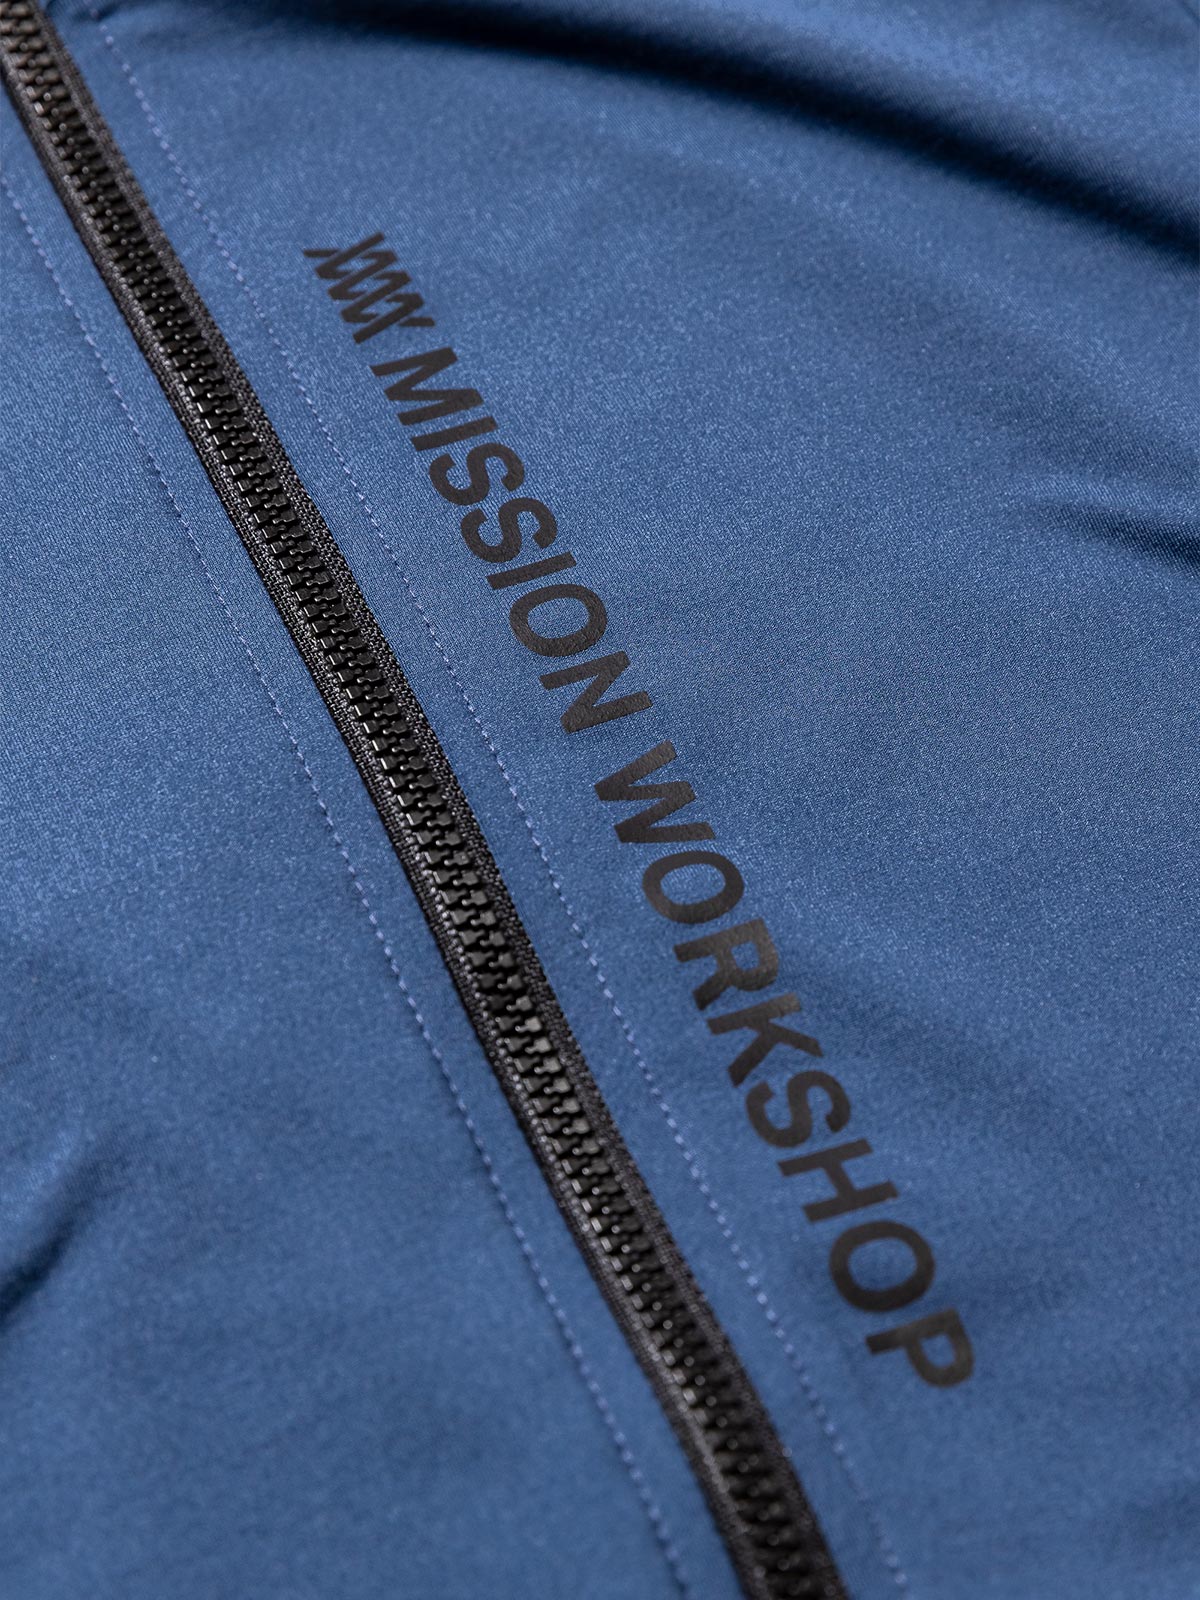 Mission Pro Jersey : LS Women's by Mission Workshop - Weatherproof Bags & Technical Apparel - San Francisco & Los Angeles - Construit pour durer - Garanti pour toujours